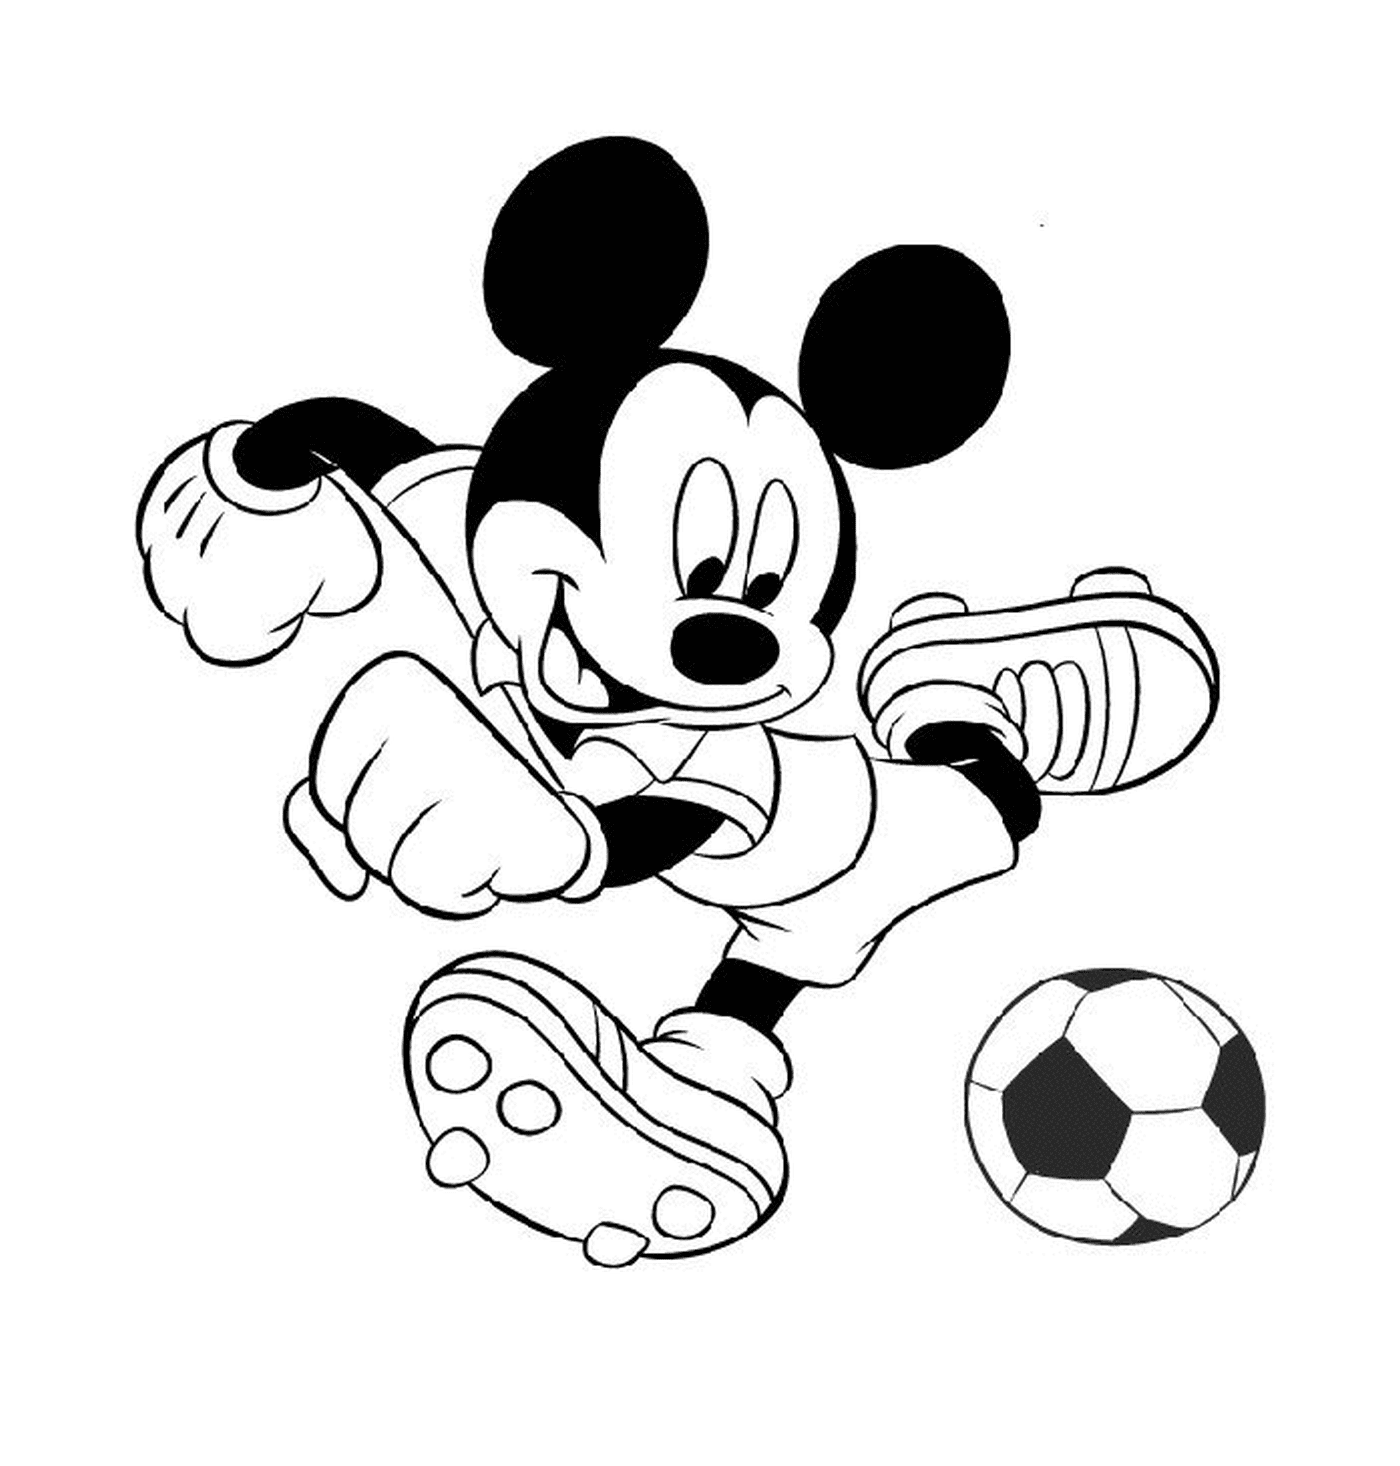  Микки играет в футбол: пинает футбольный мяч 